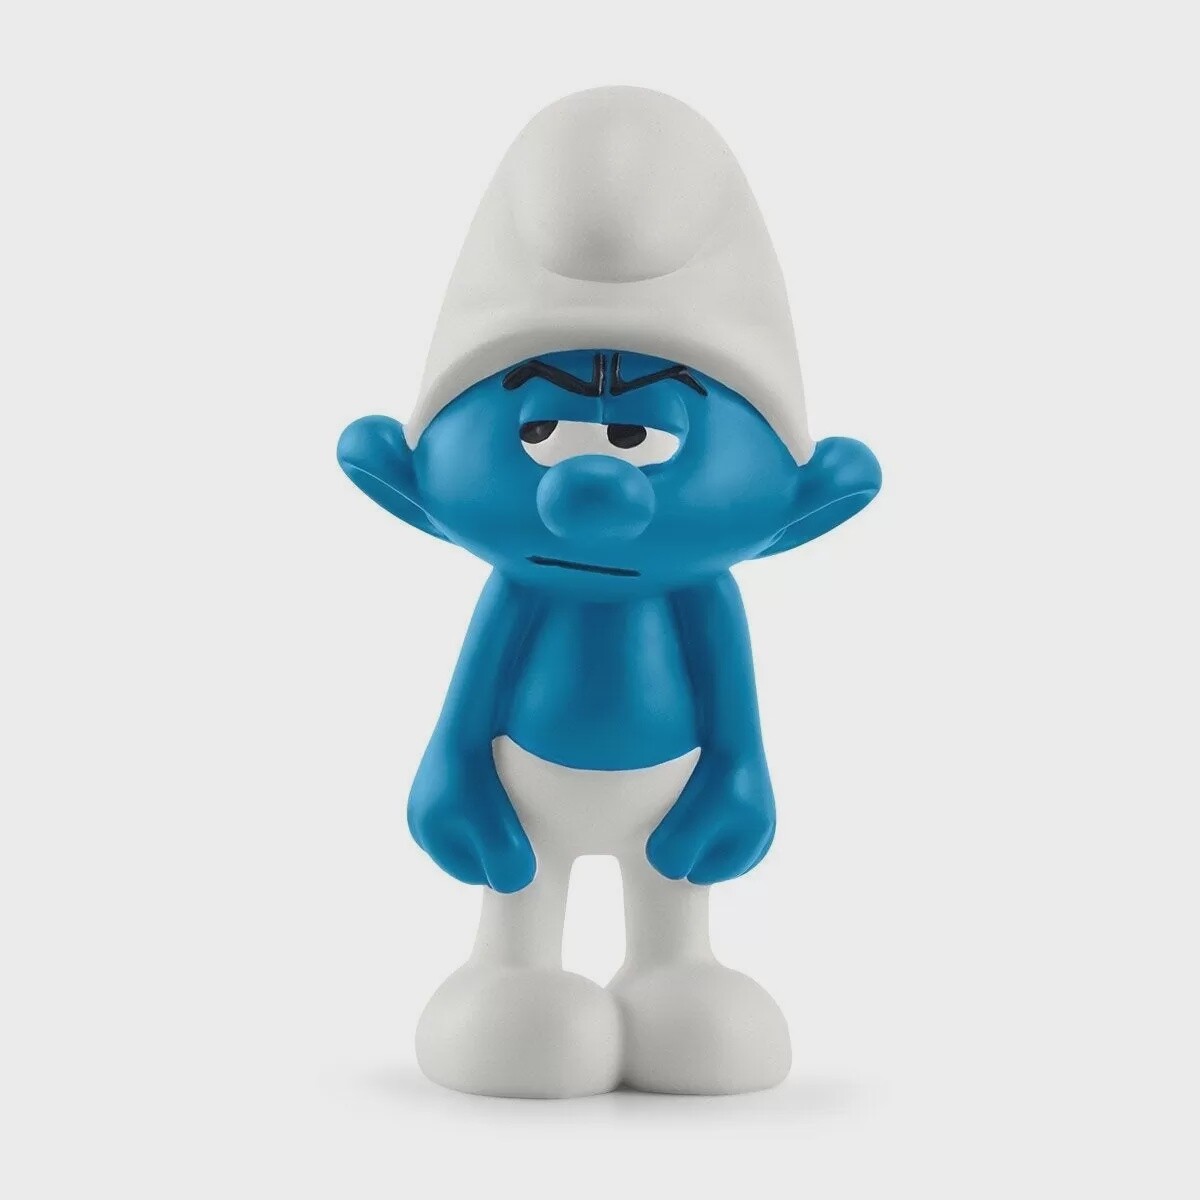 Grouchy Smurf